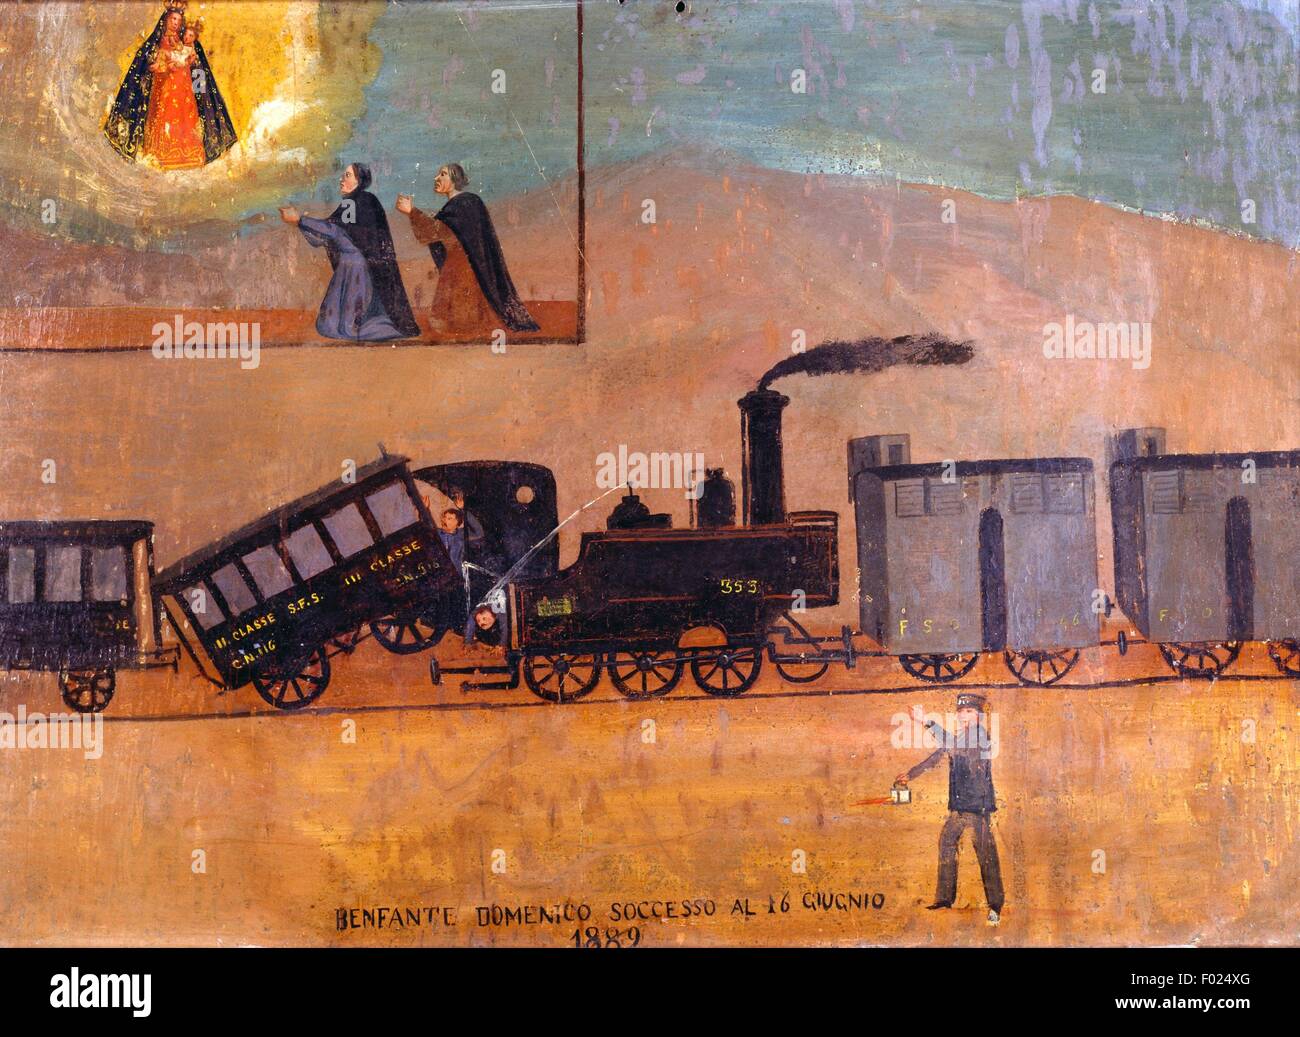 Déraillement, un accident entre deux trains, ex voto, Italie, 19e siècle. Banque D'Images